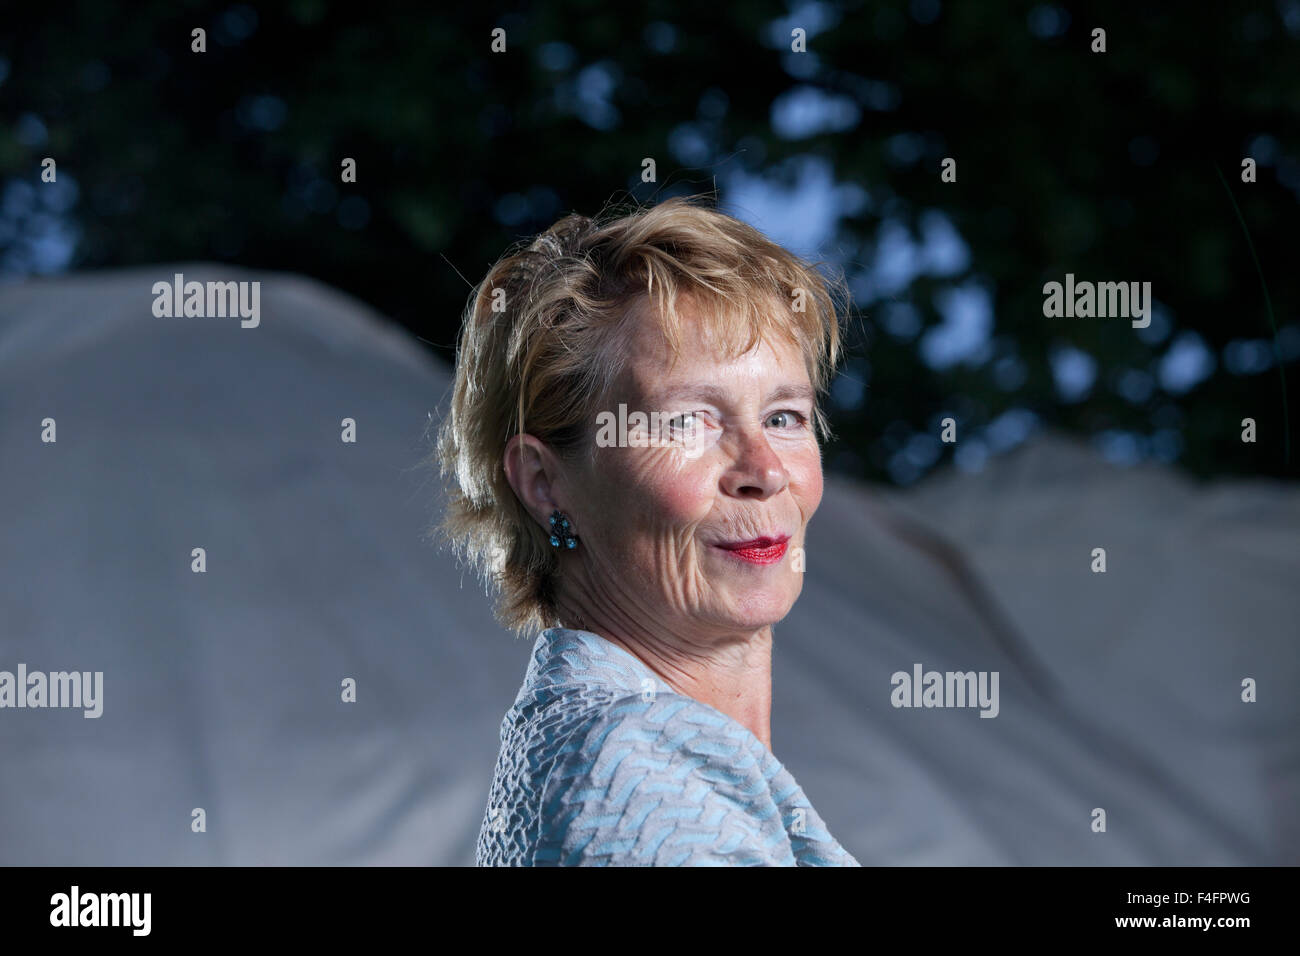 Celia Imrie, l'actrice et auteur, à l'Edinburgh International Book Festival 2015. Edimbourg, Ecosse. 25 août 2015 Banque D'Images